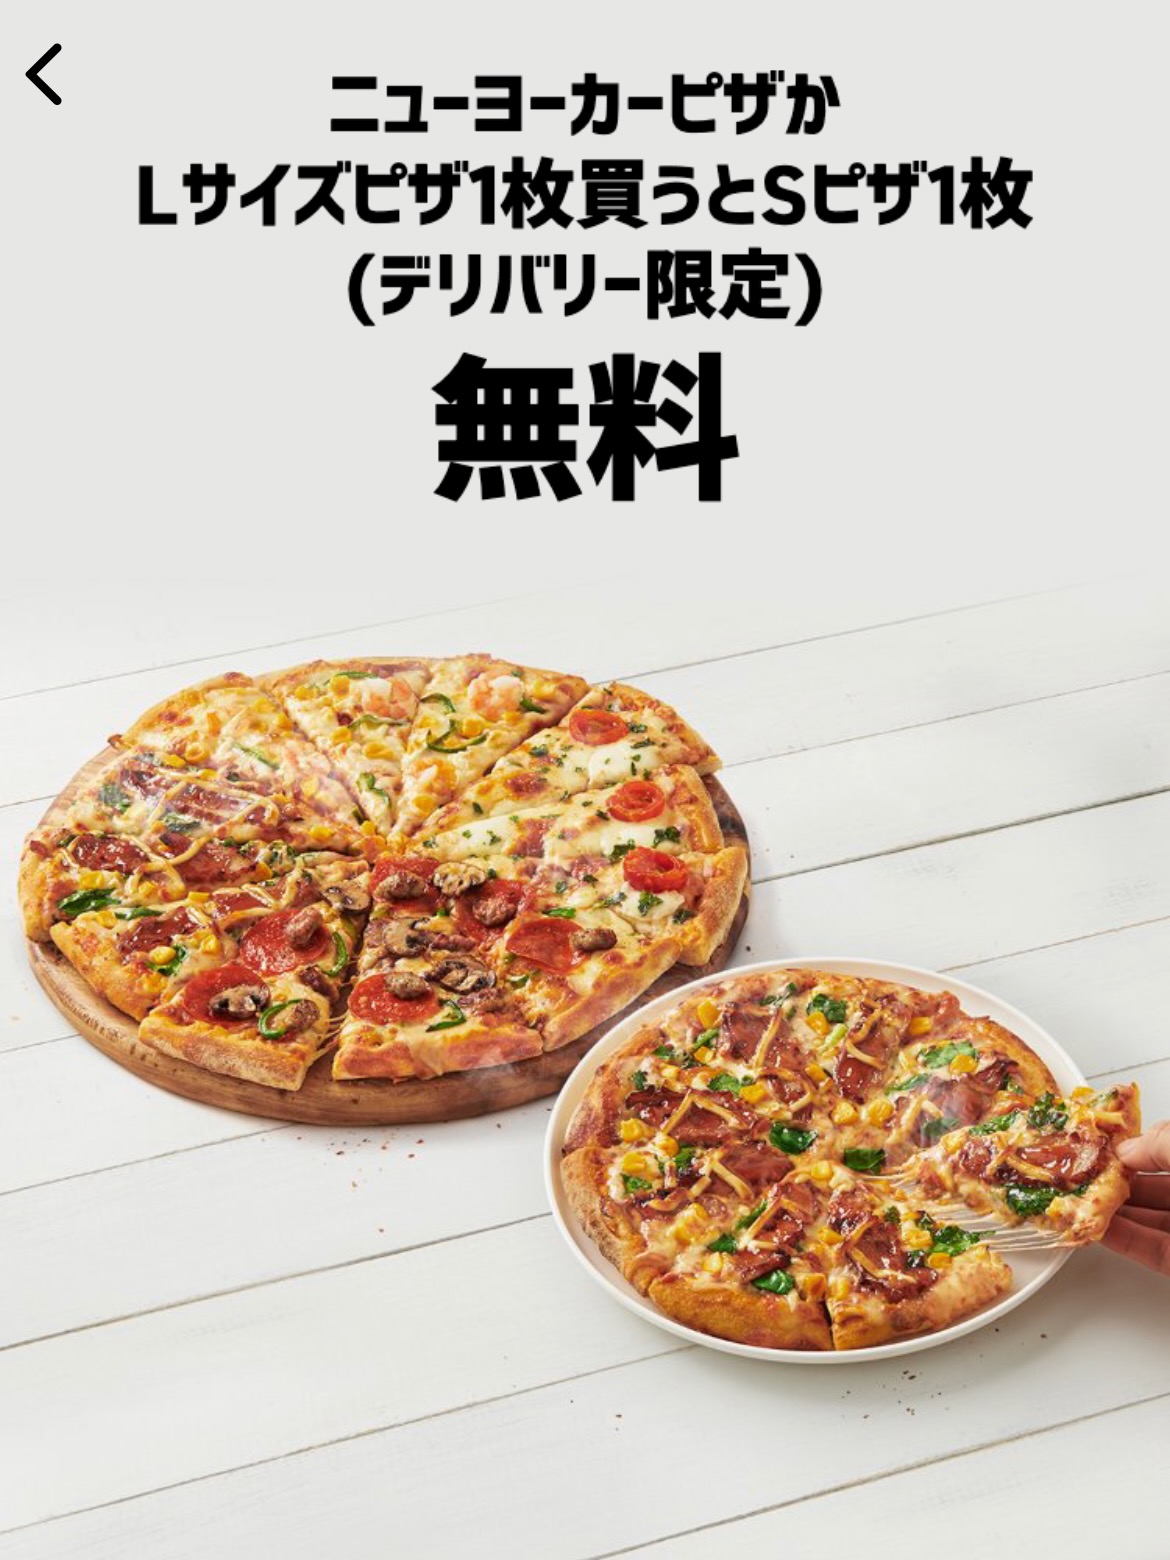 ニューヨーカーピザかLサイズピザ1枚買うとお好きなピザライスボウル1品無料